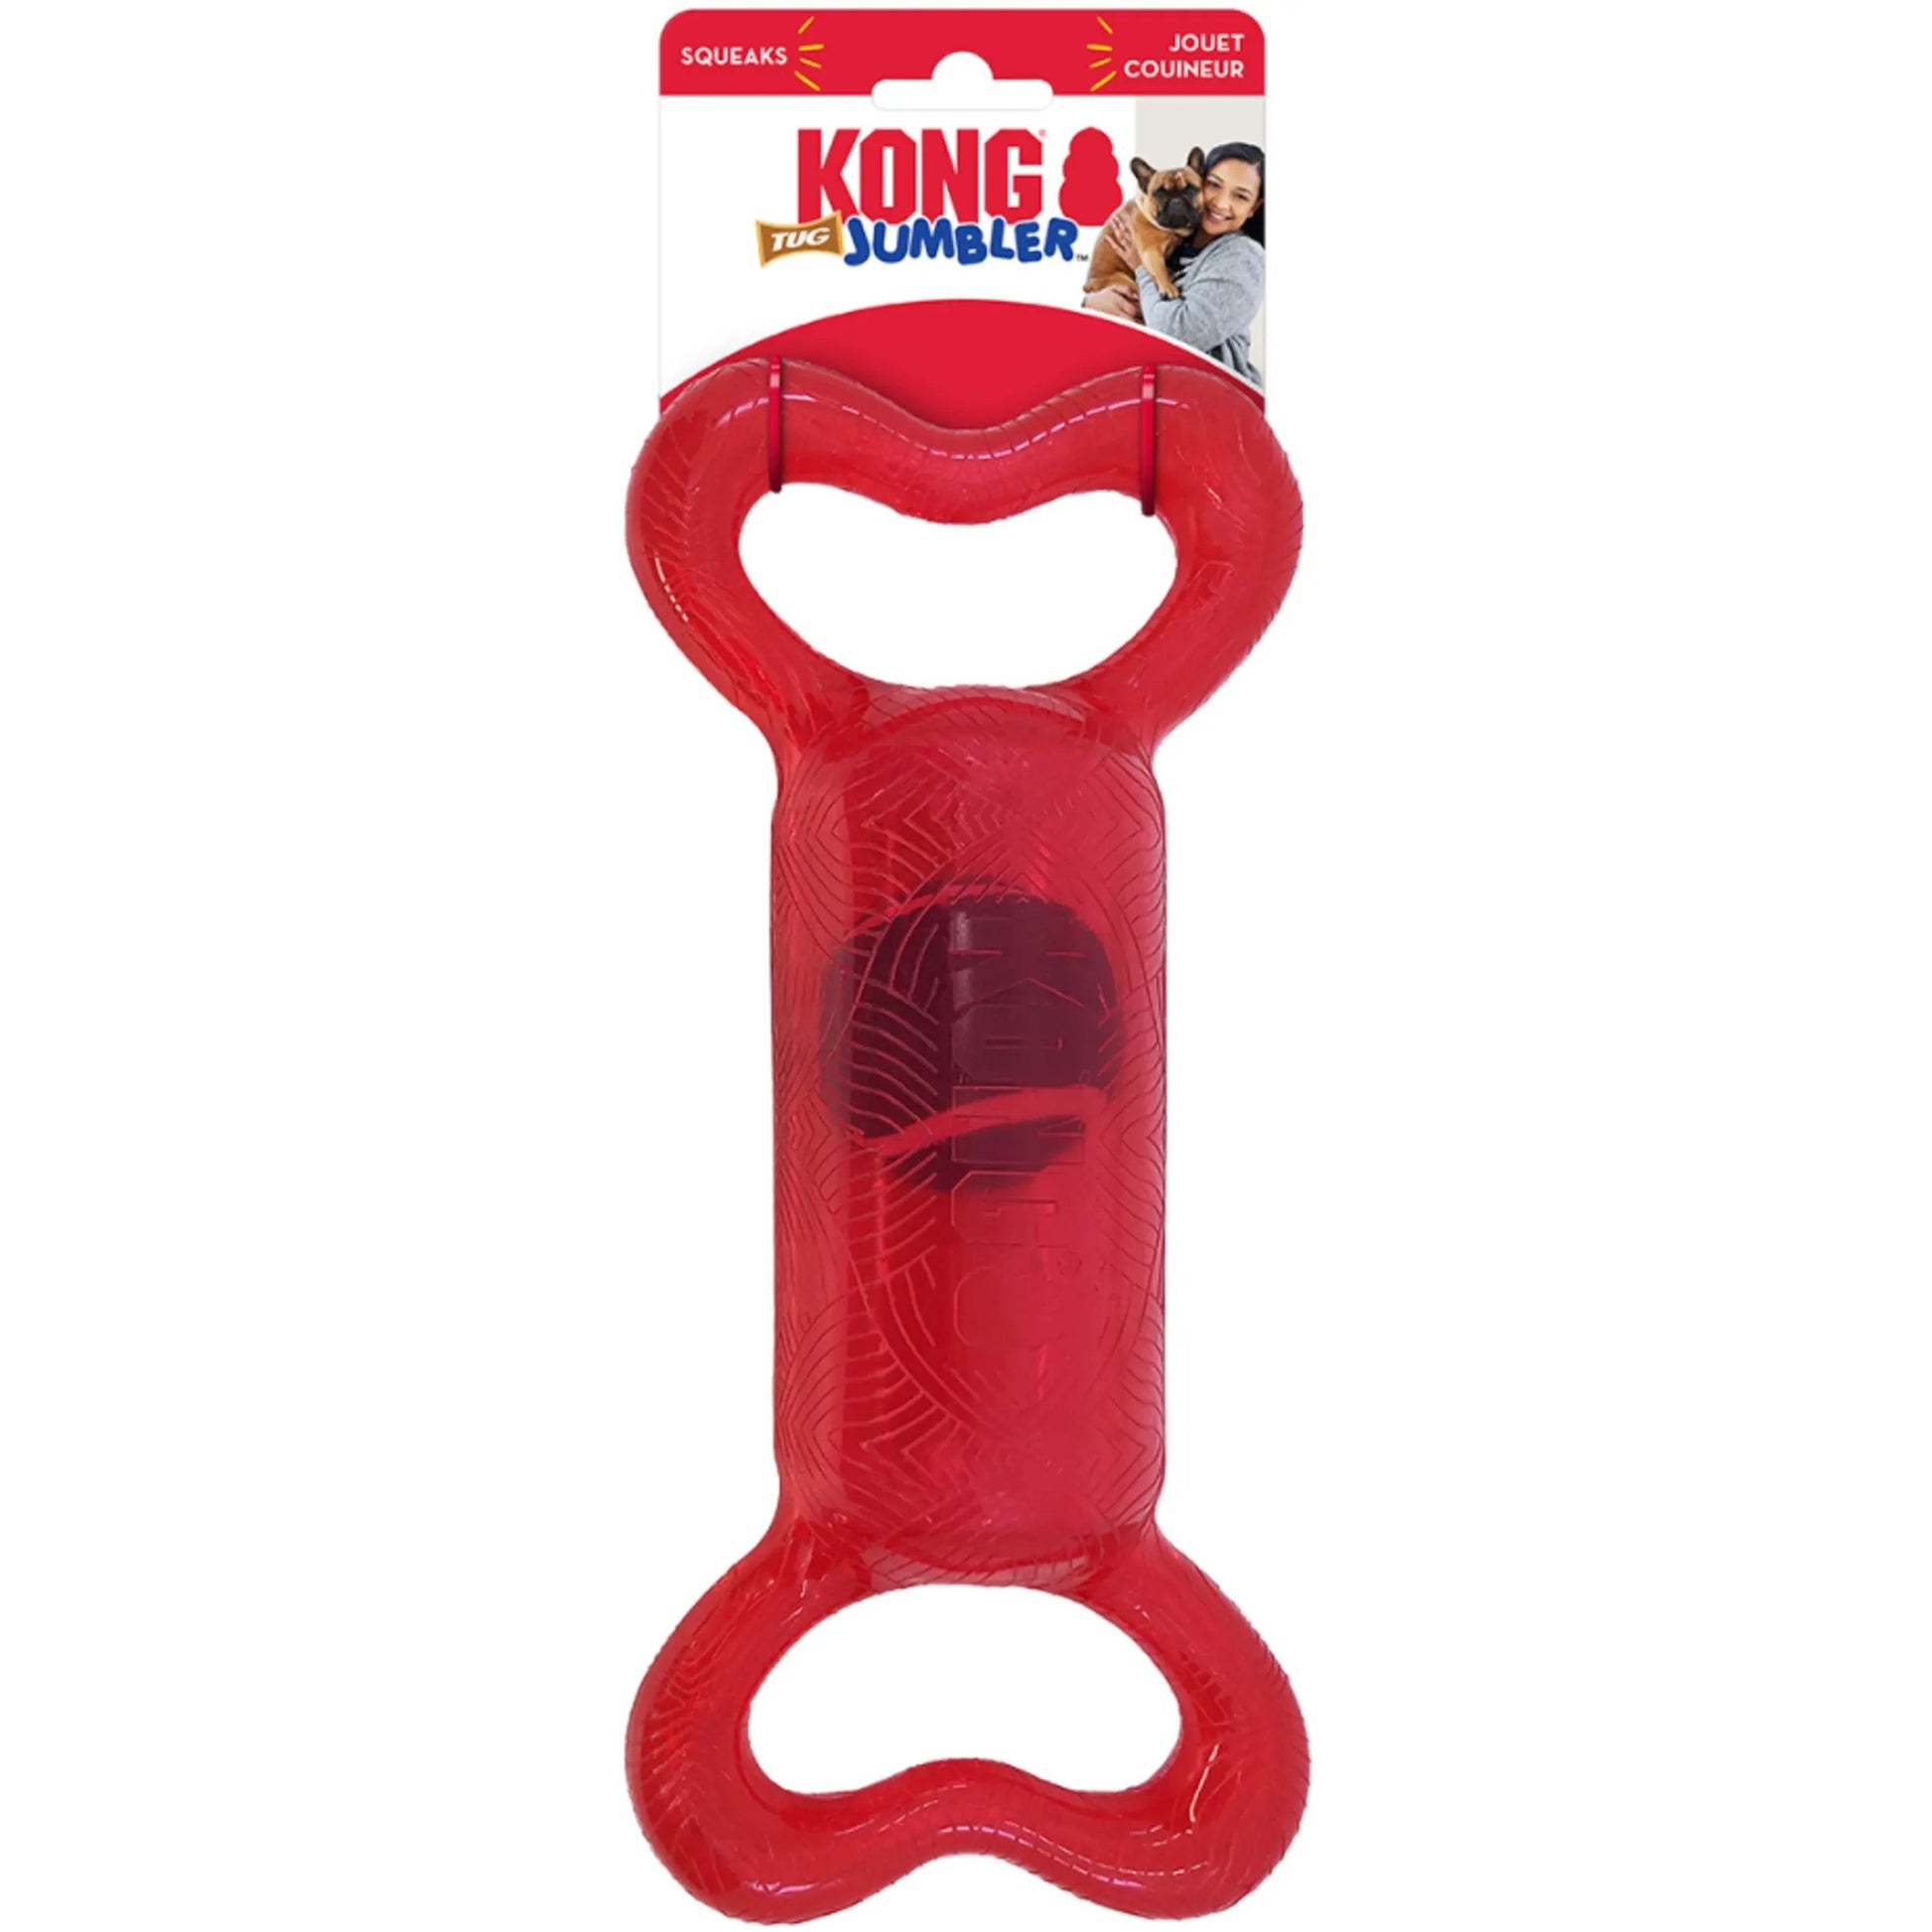 KONG Jumbler Tug Dog Toy  KONG Jumbler Tug Dog Toy Assorted Kong